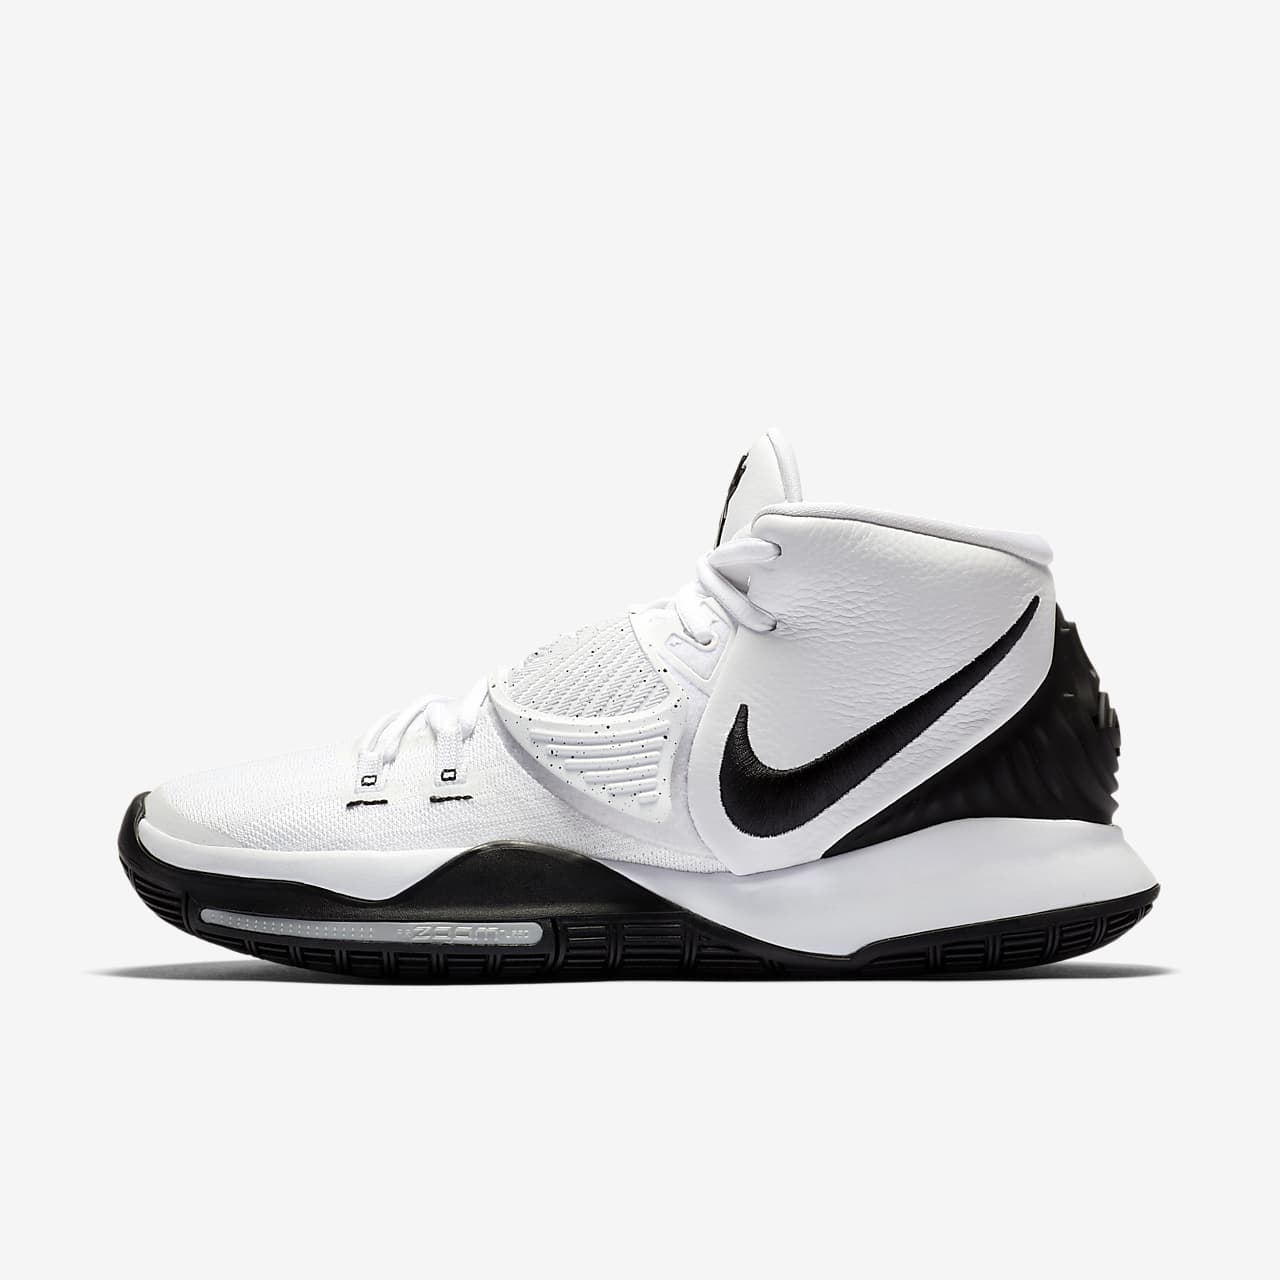 Kyrie 6 Basketball Shoe. Nike LU